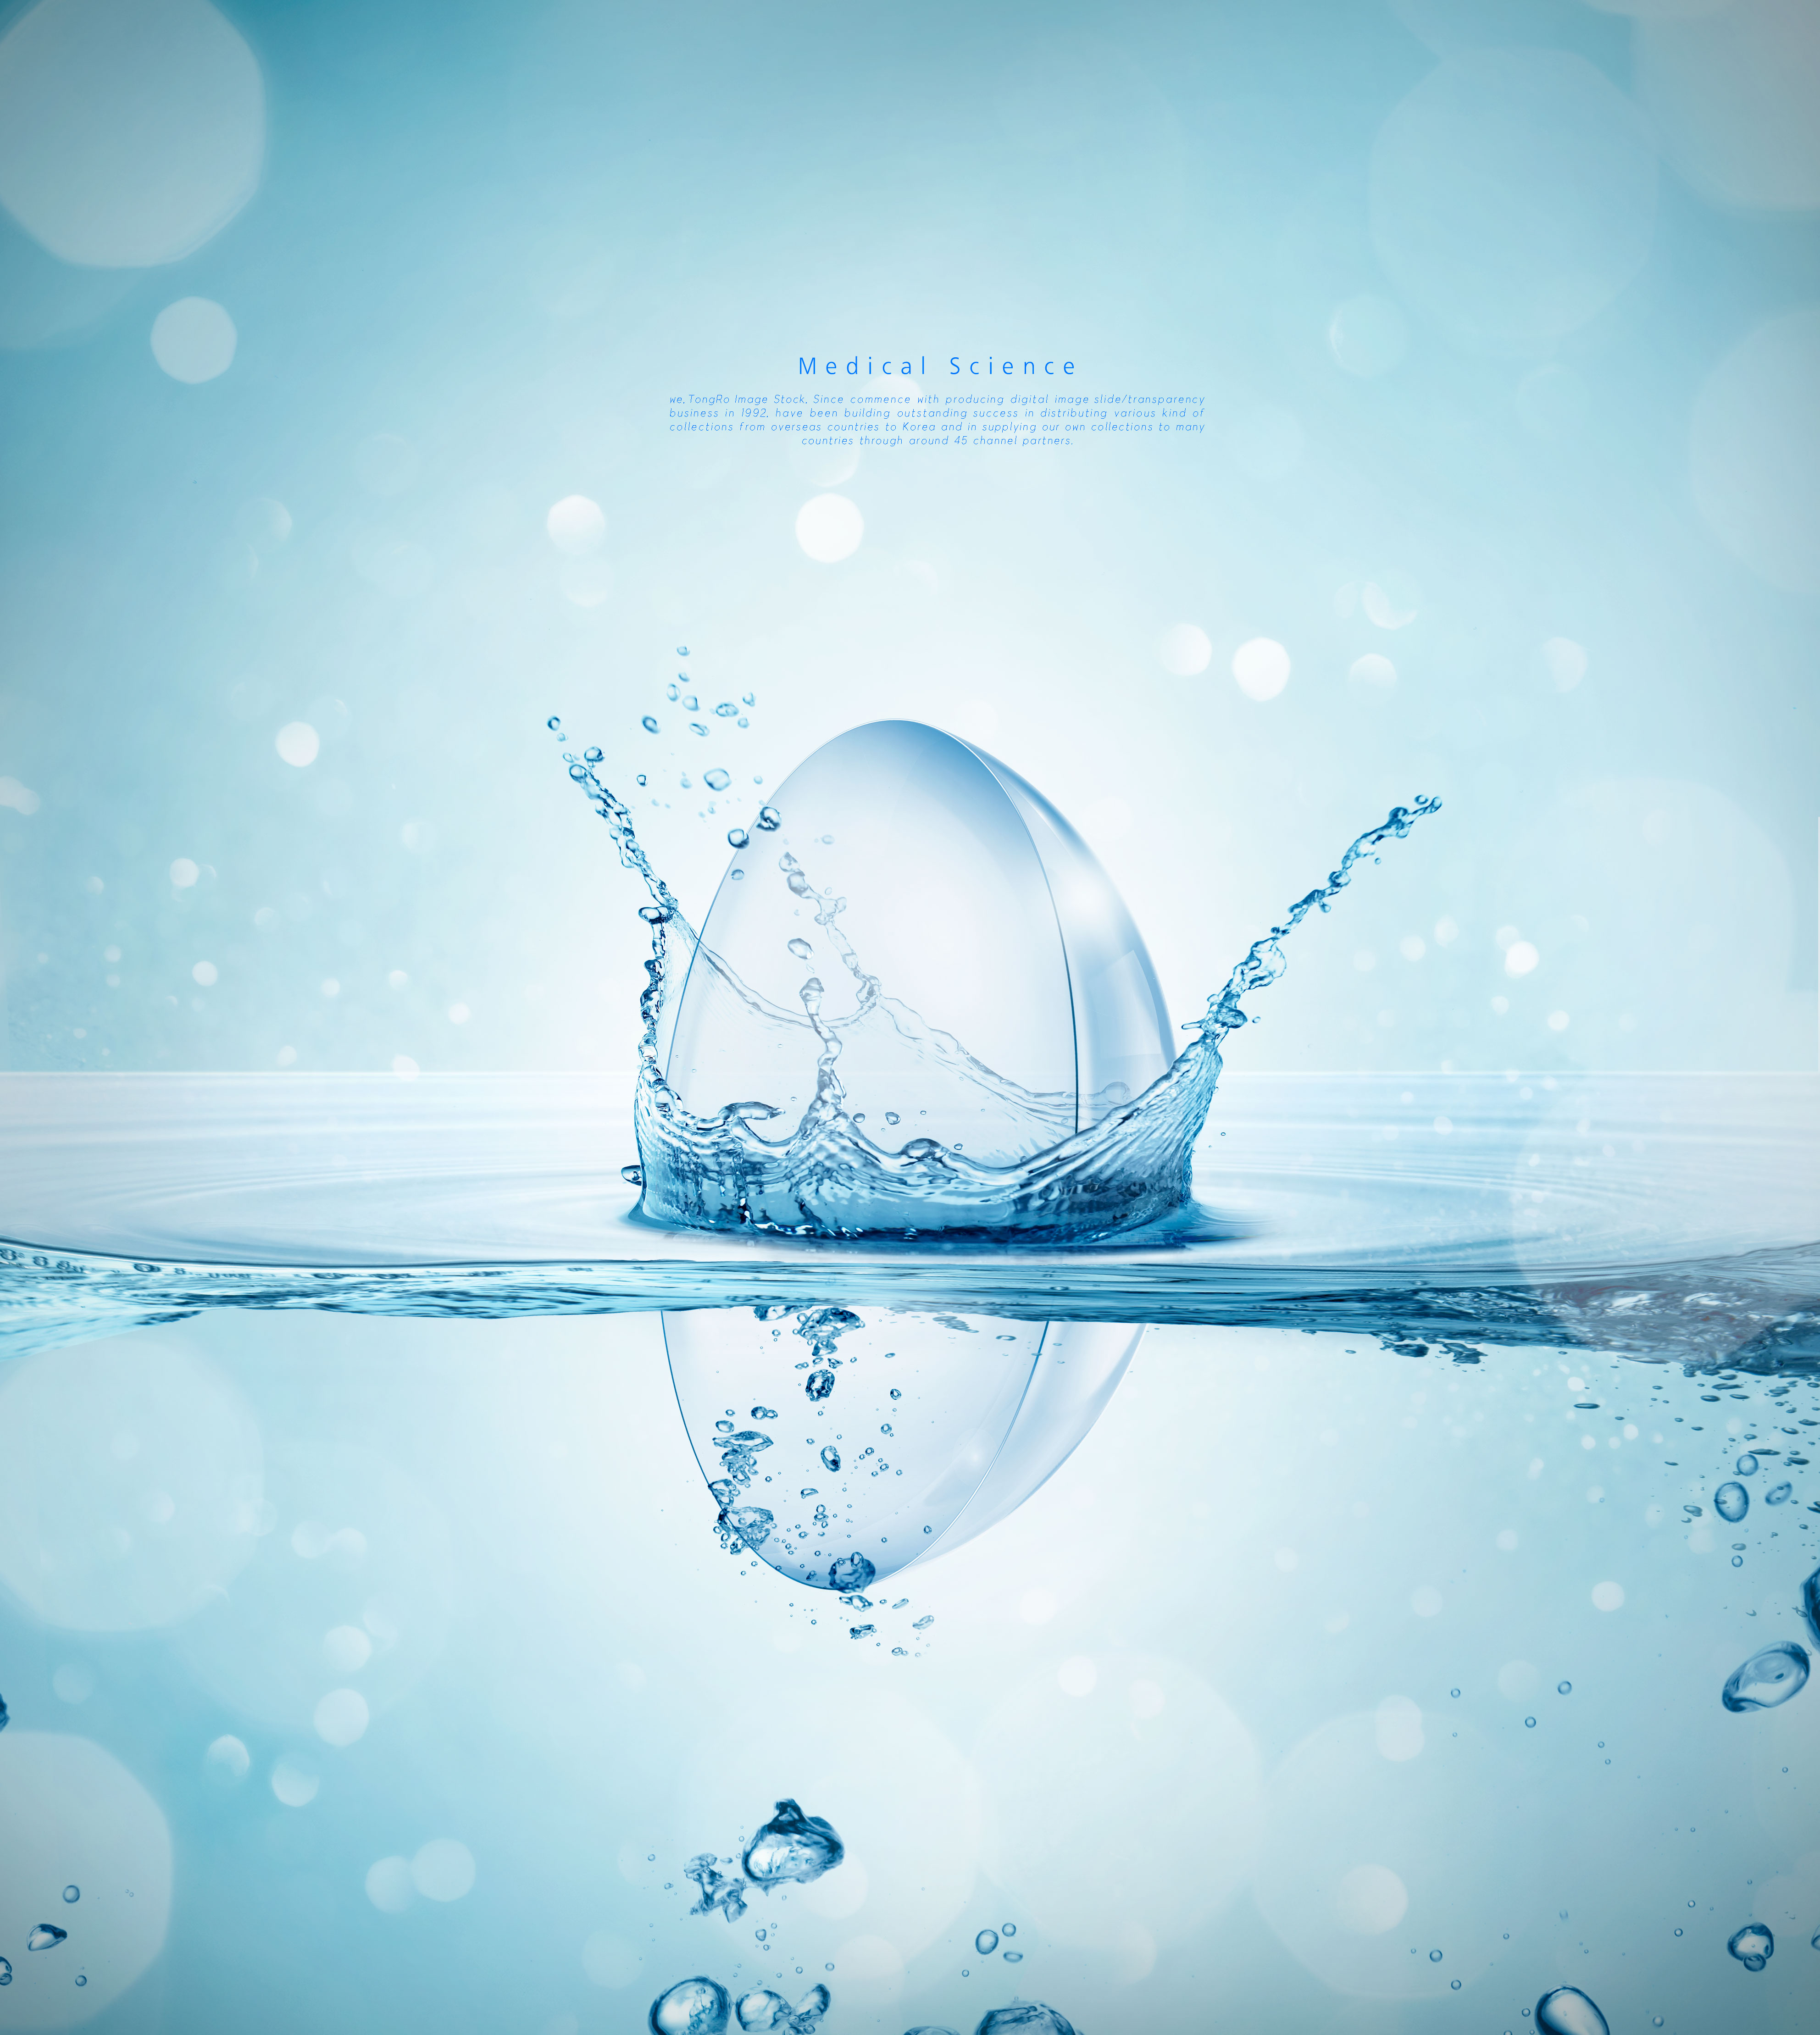 水分子生物科学主题海报设计套装[PSD]插图(2)